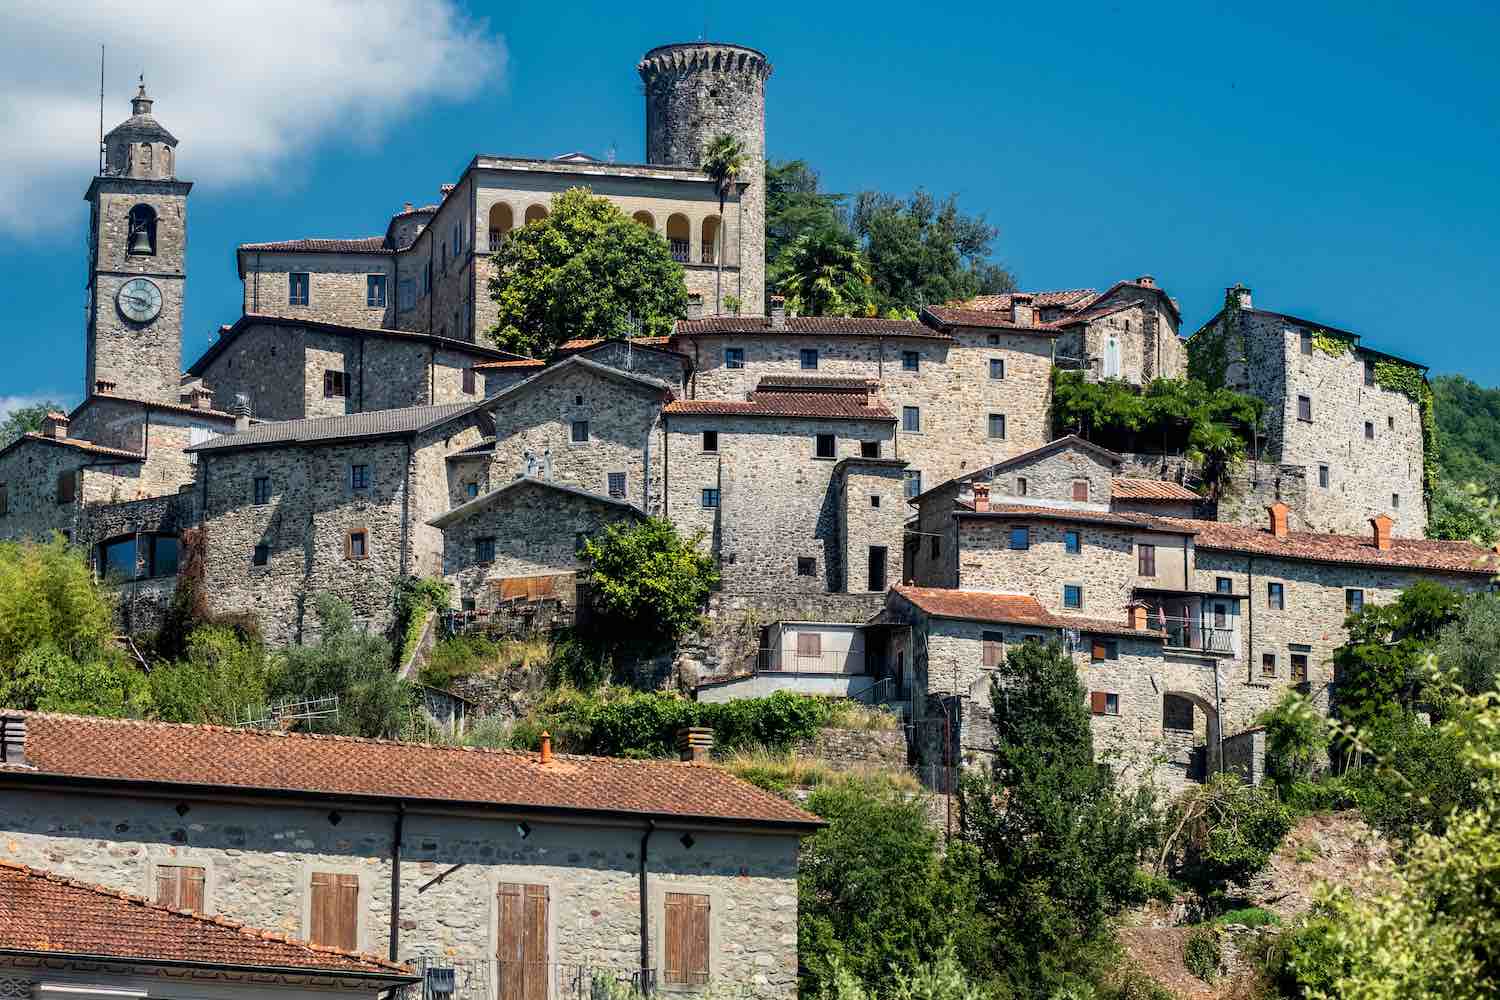 Il borgo di Bagnone in Lunigiana è uno dei borghi montani più belli della Toscana